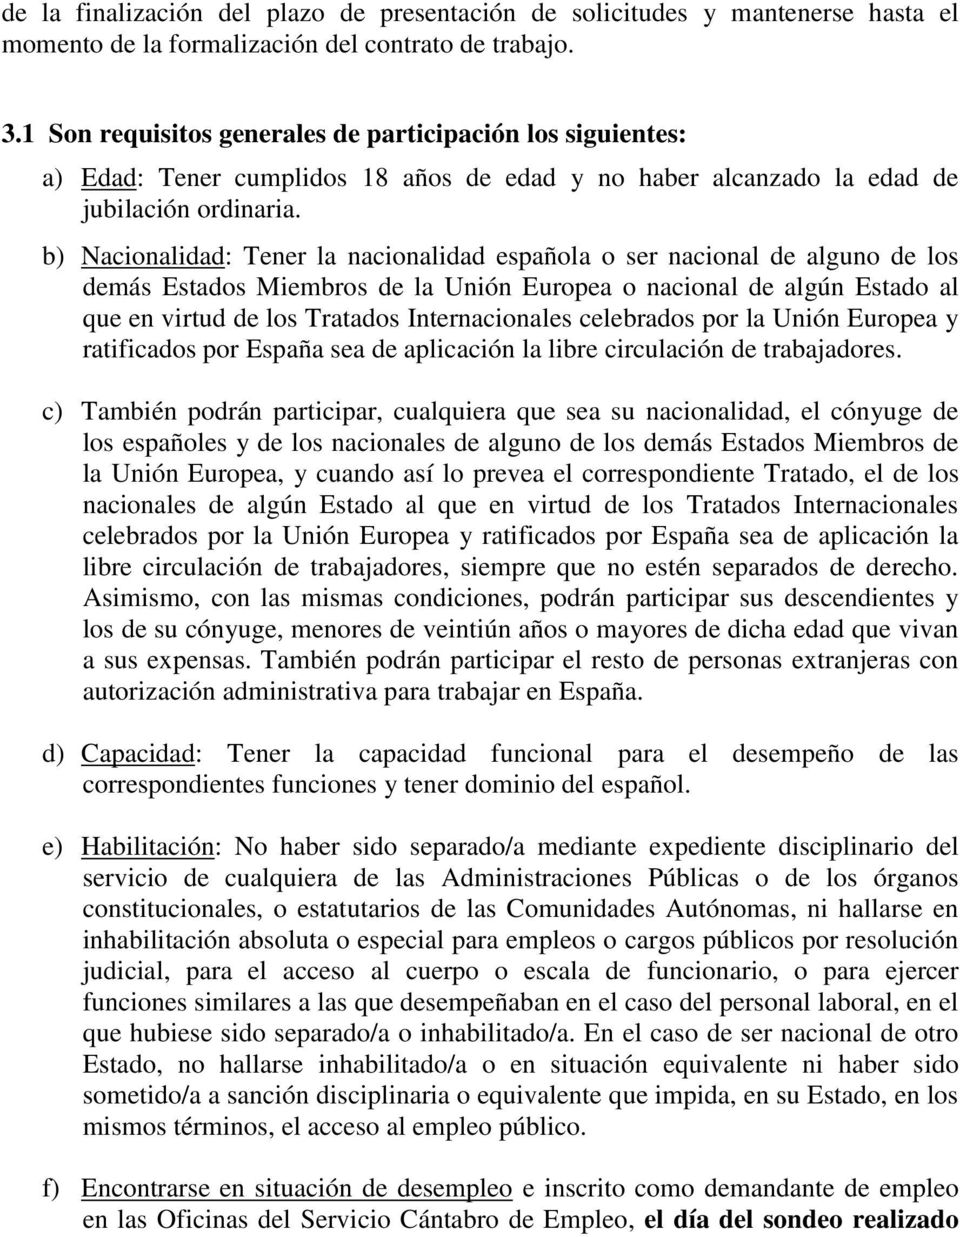 b) Nacionalidad: Tener la nacionalidad española o ser nacional de alguno de los demás Estados Miembros de la Unión Europea o nacional de algún Estado al que en virtud de los Tratados Internacionales